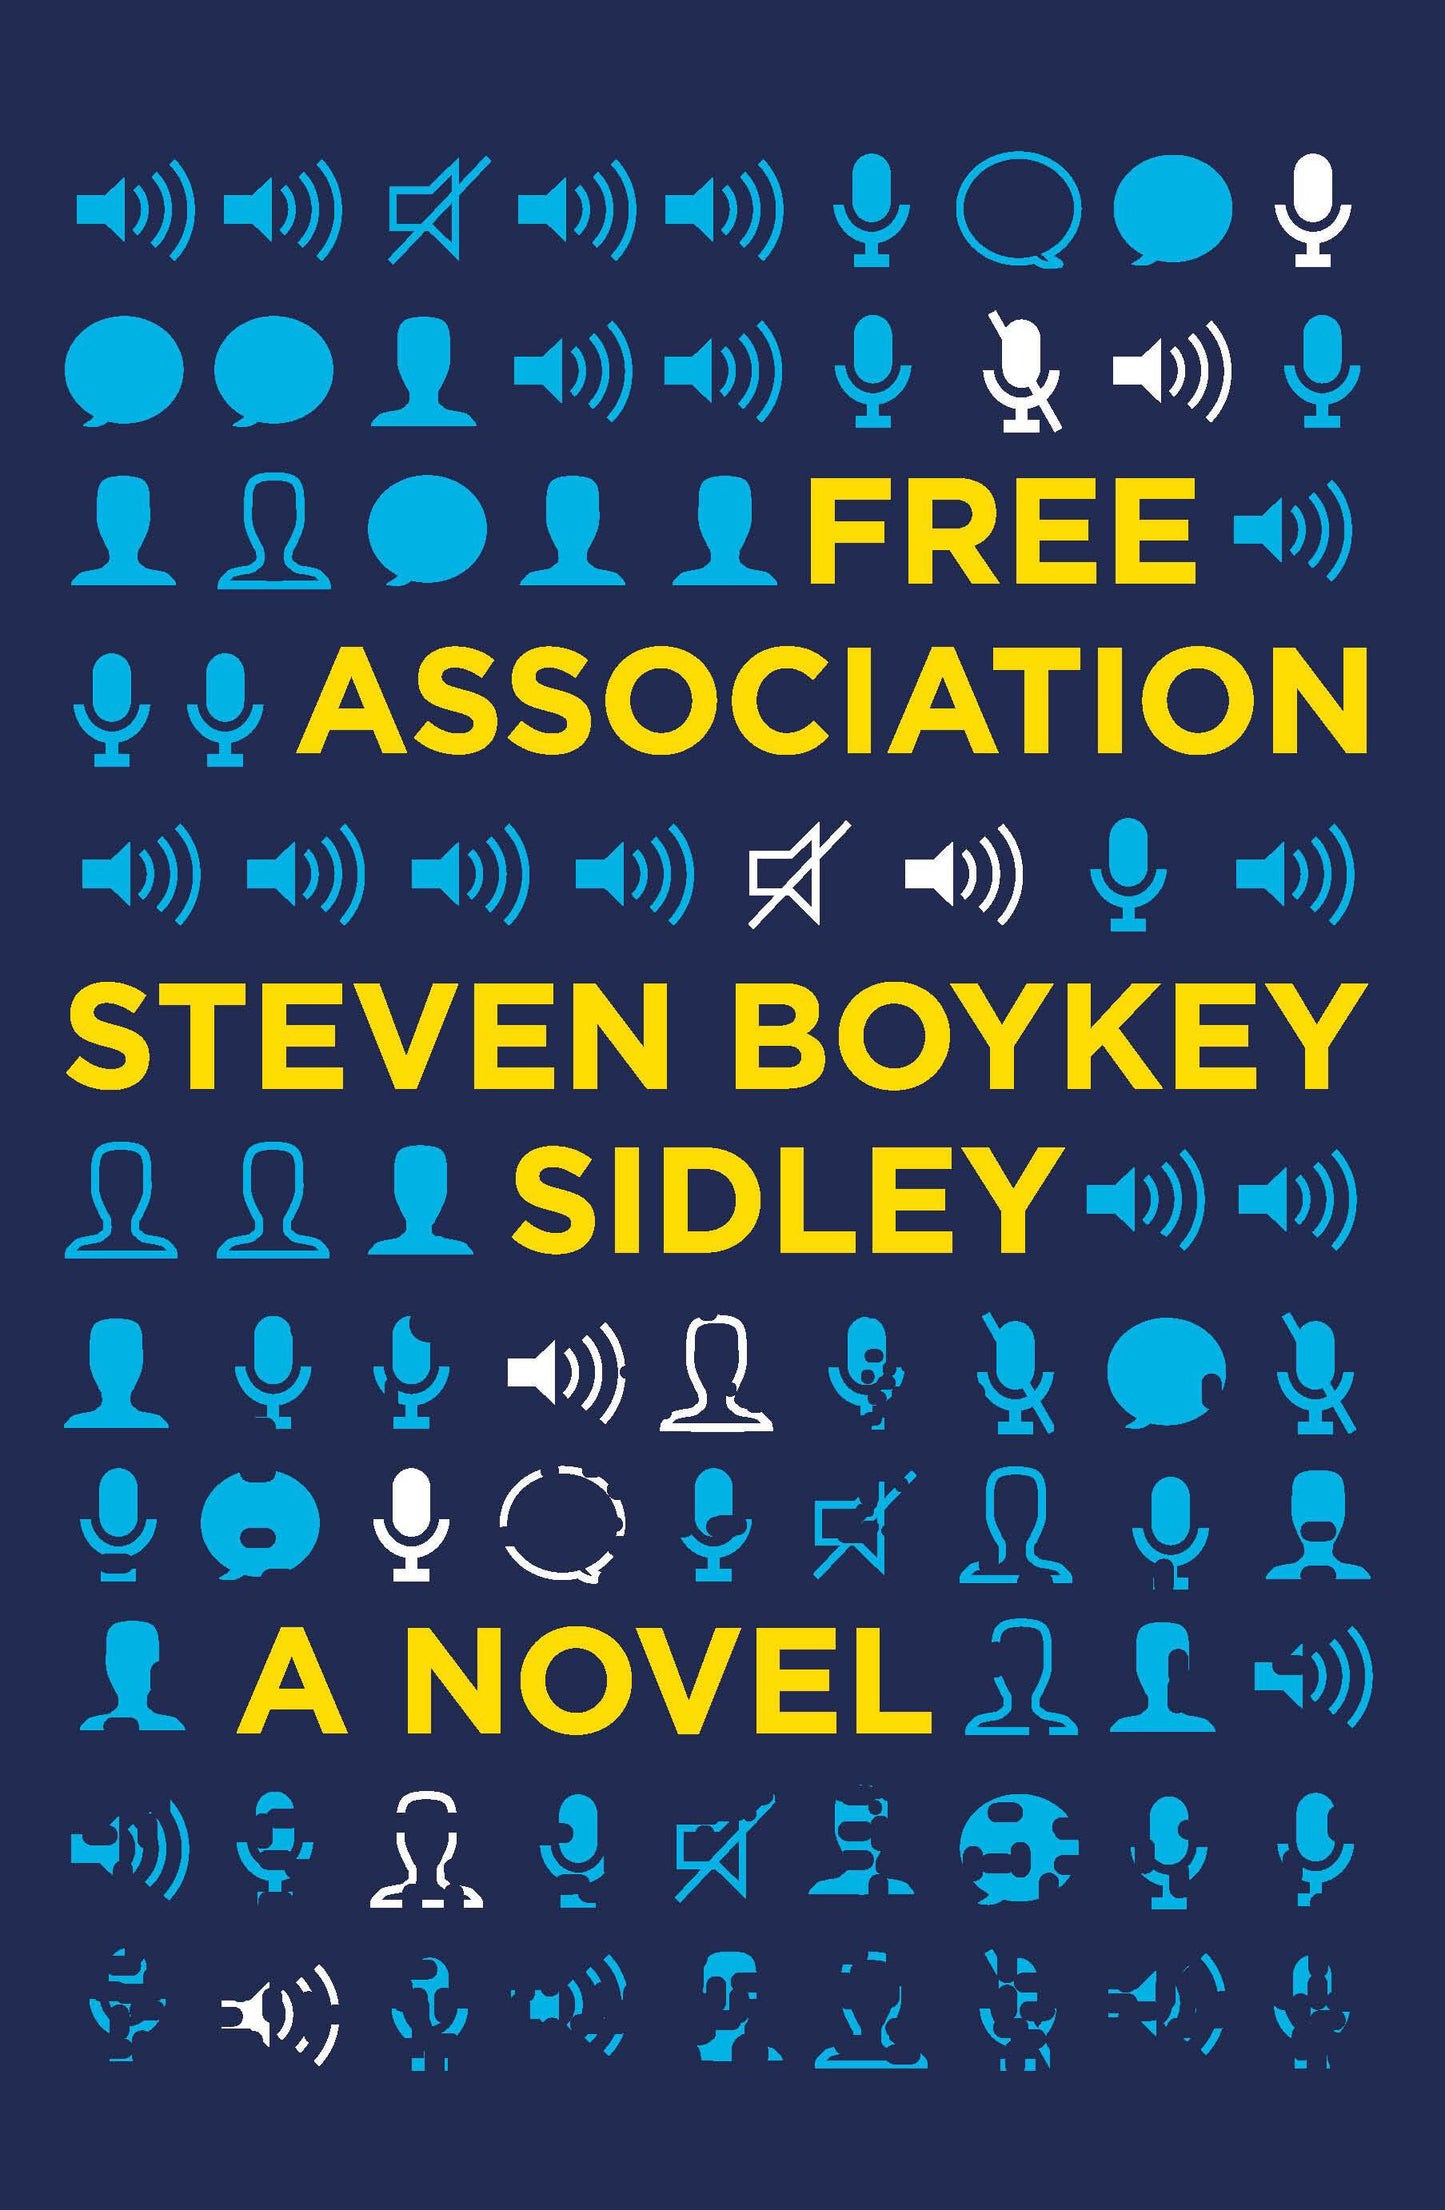 Free association: A novel